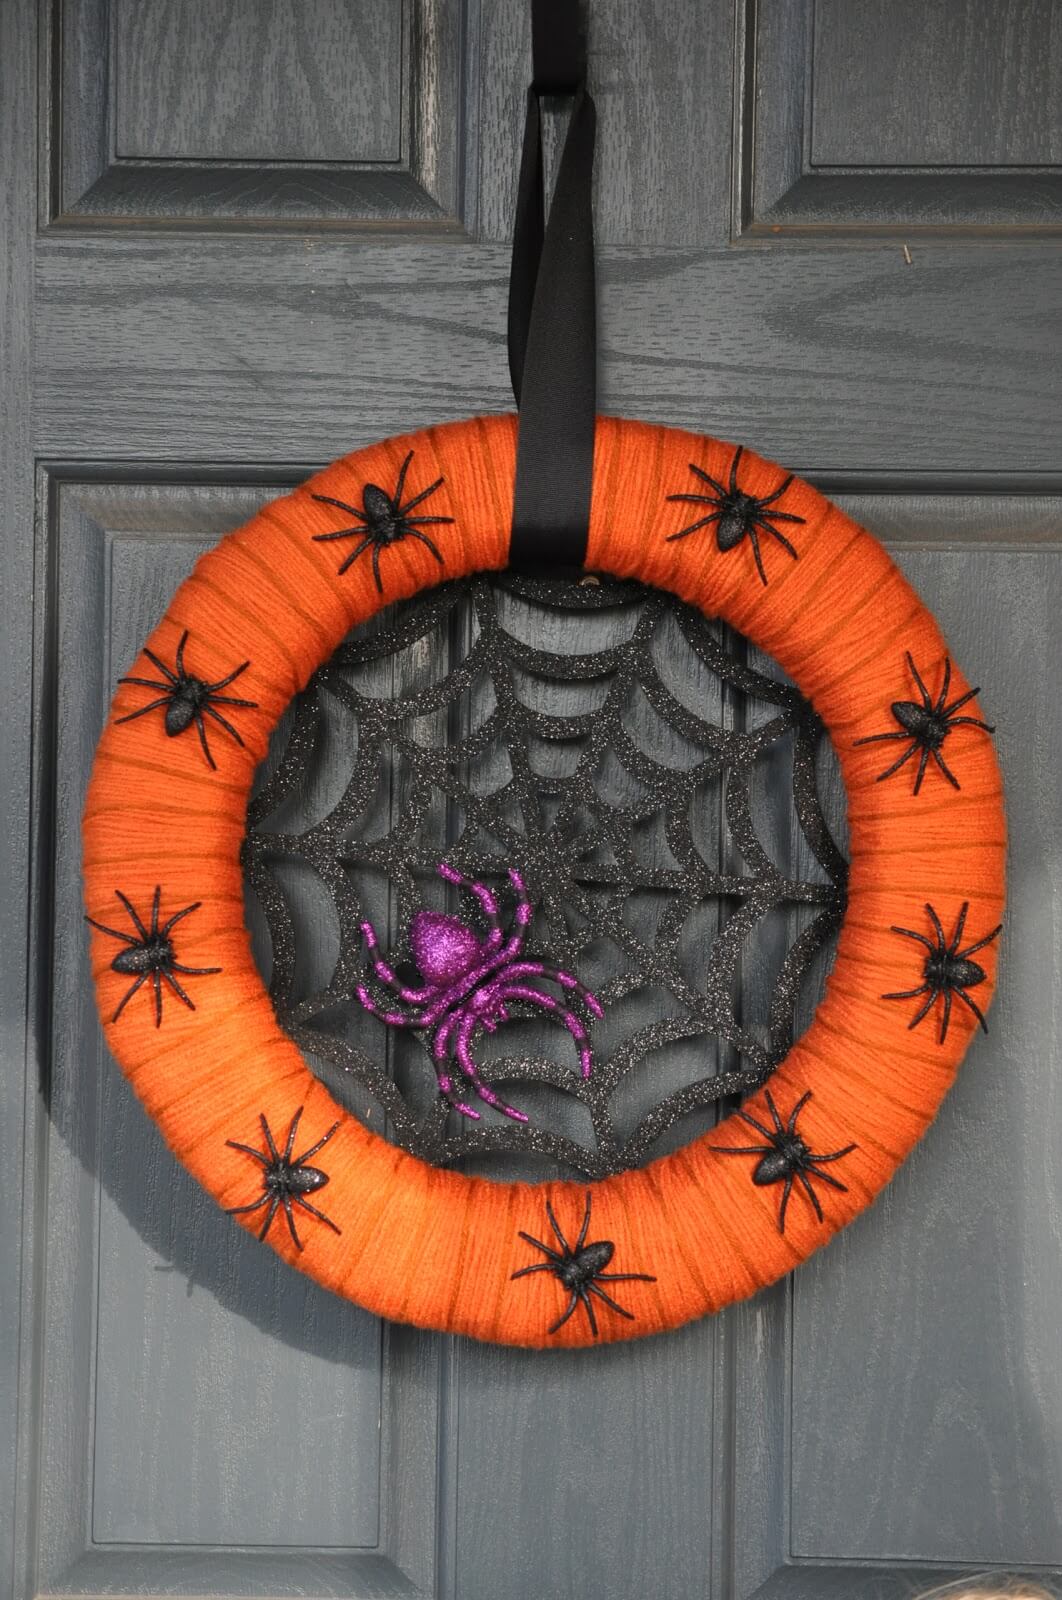 A Spider’s Nest Halloween Wreath